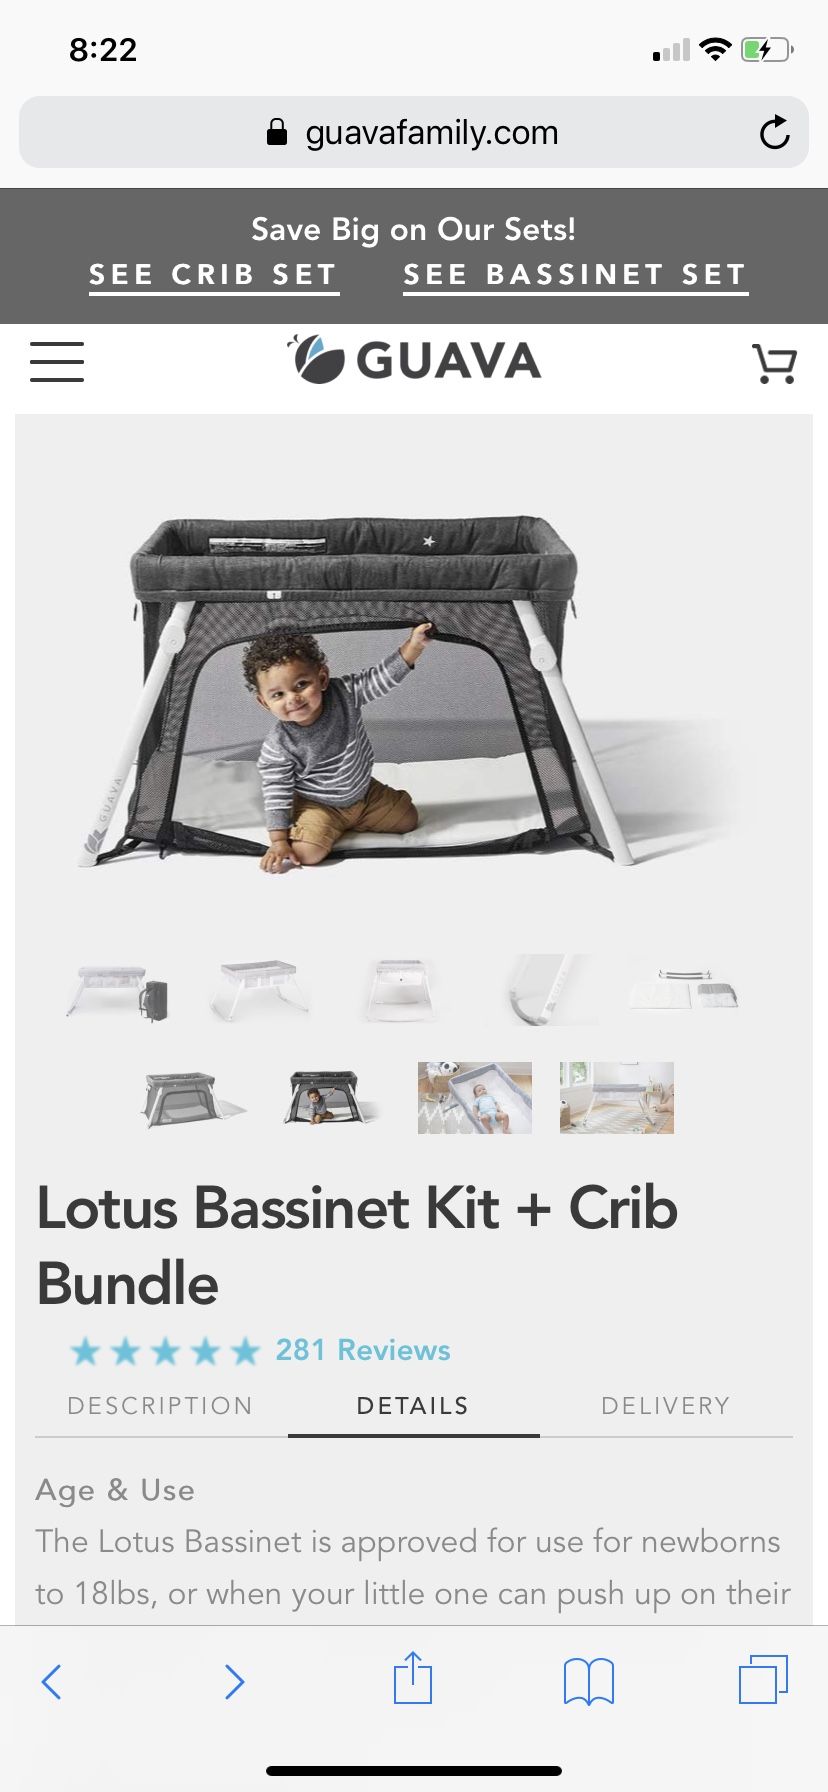 Lotus Bassinet Kit + Crib Bundle